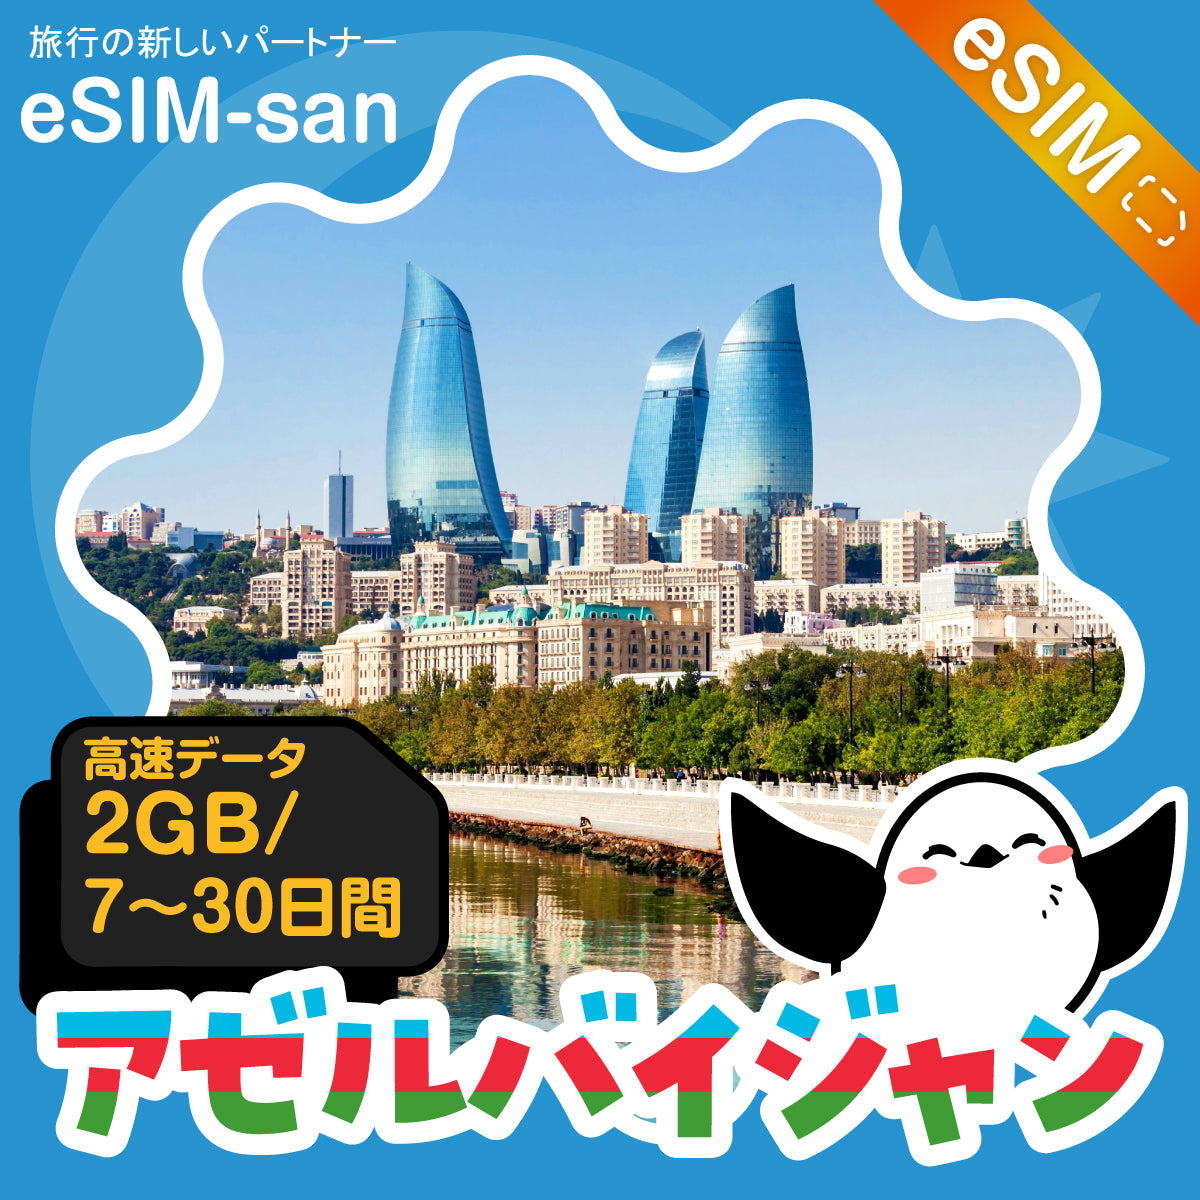 アゼルバイジャンeSIMの2GB/dayプラン画像_eSIM-san